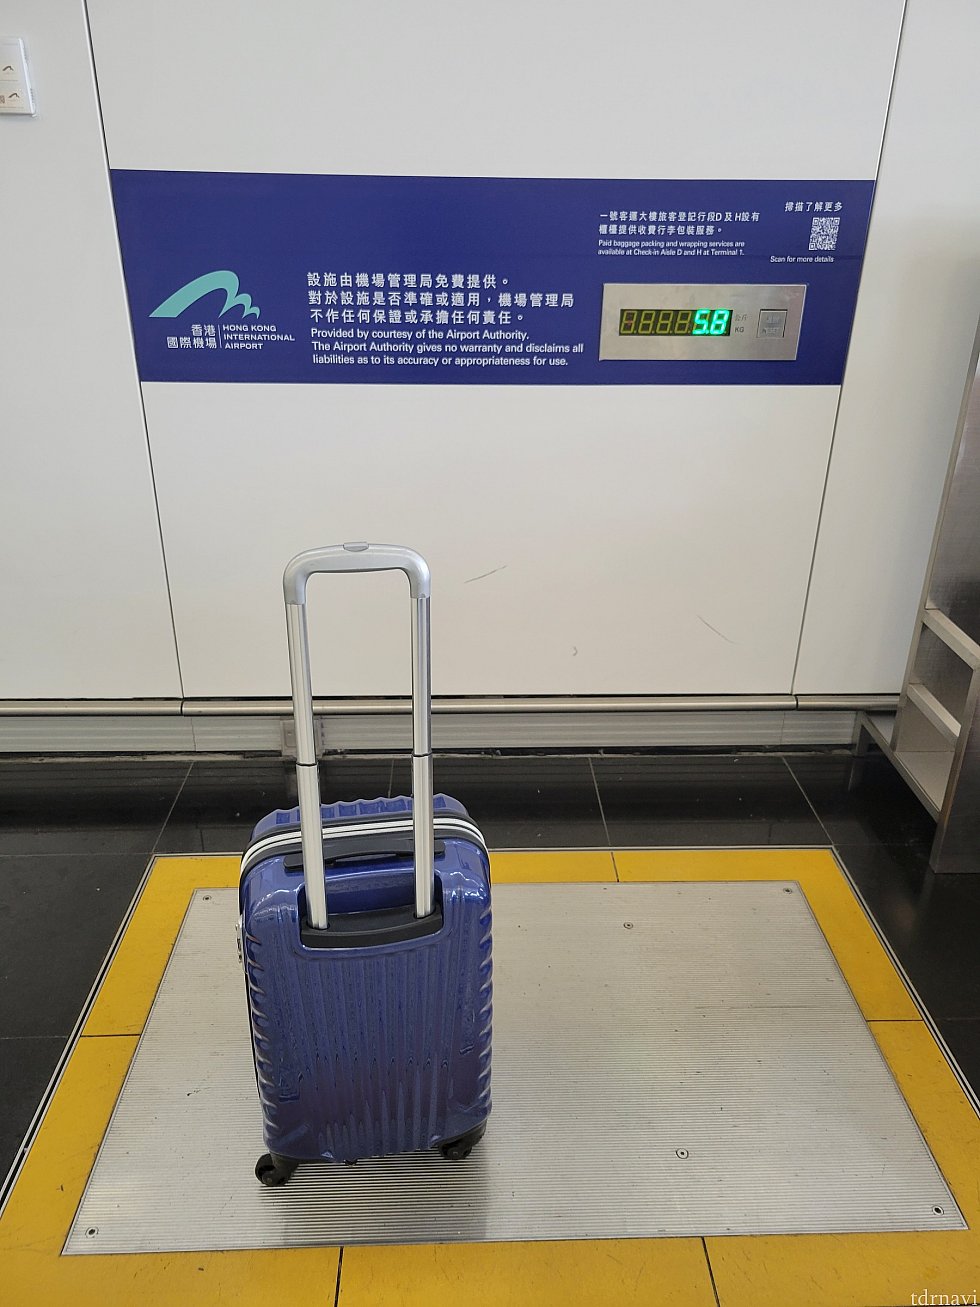 【香港国際空港】荷物はかりがあるので、チェックイン前に重さを測れます。<br>
埋め込み式なので気付かずこの上で荷物の詰め替え作業をしている人がいましたが、体重が公開されてしまうのでお気をつけください。